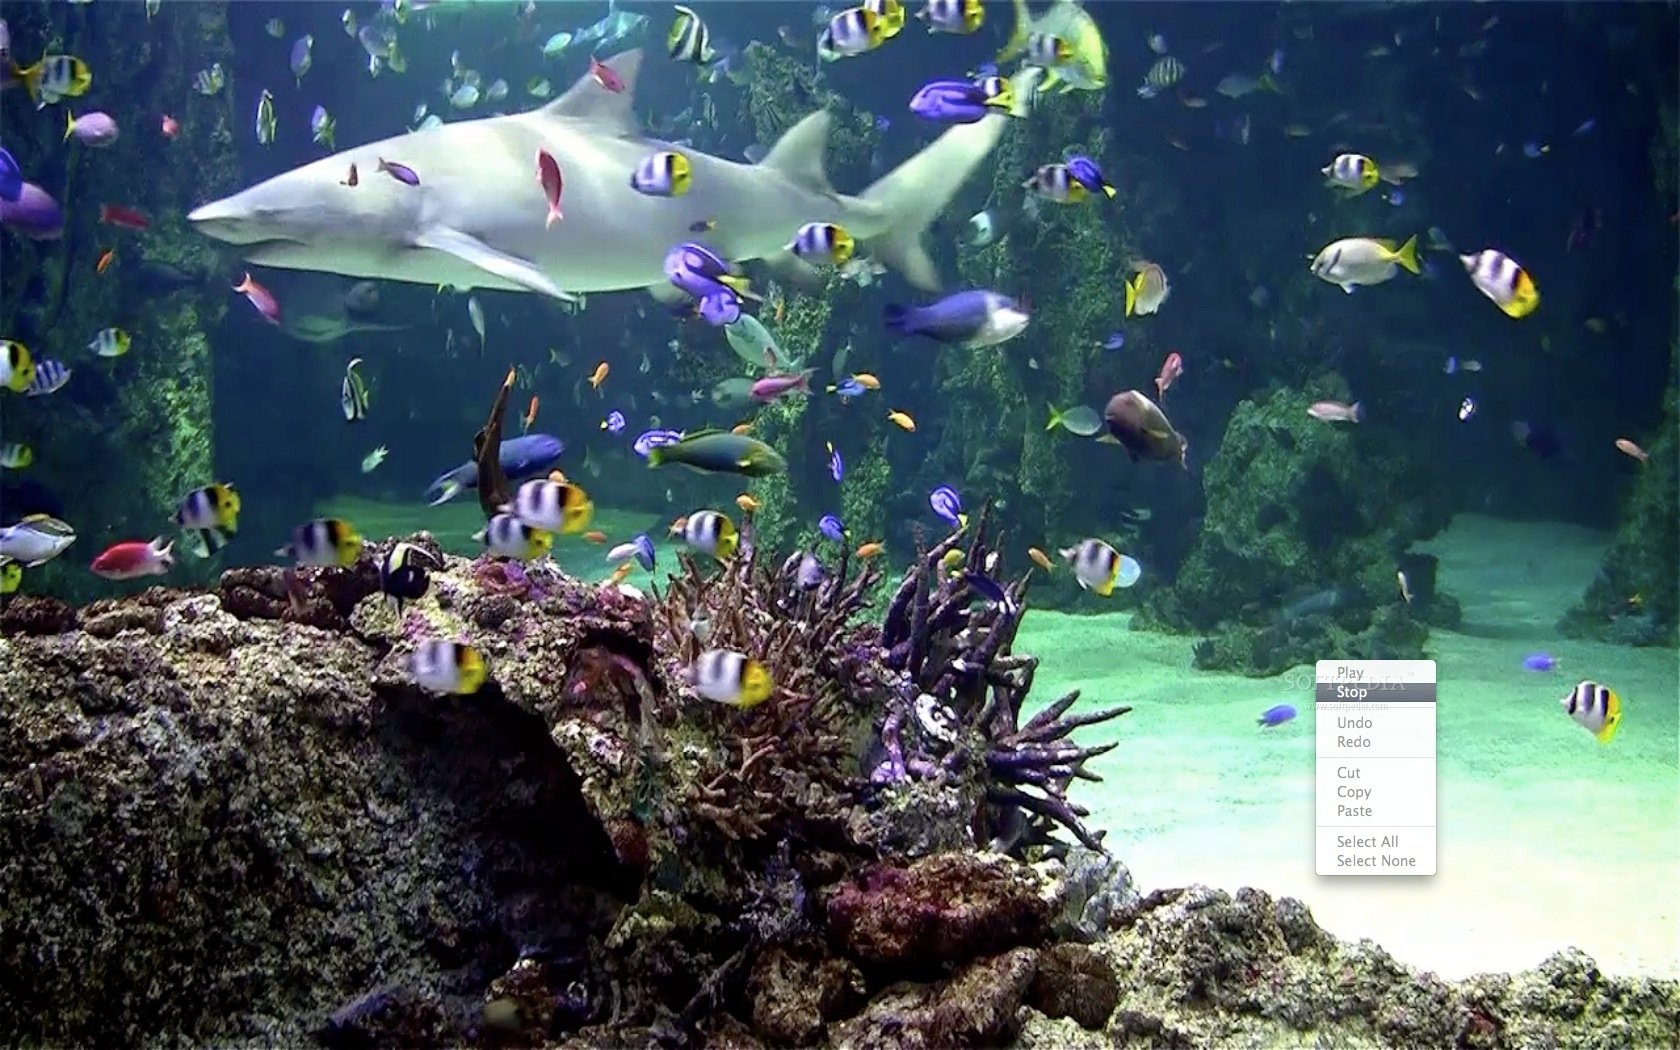 acquario live wallpaper hd,pesce,biologia marina,pesce,acquario,subacqueo